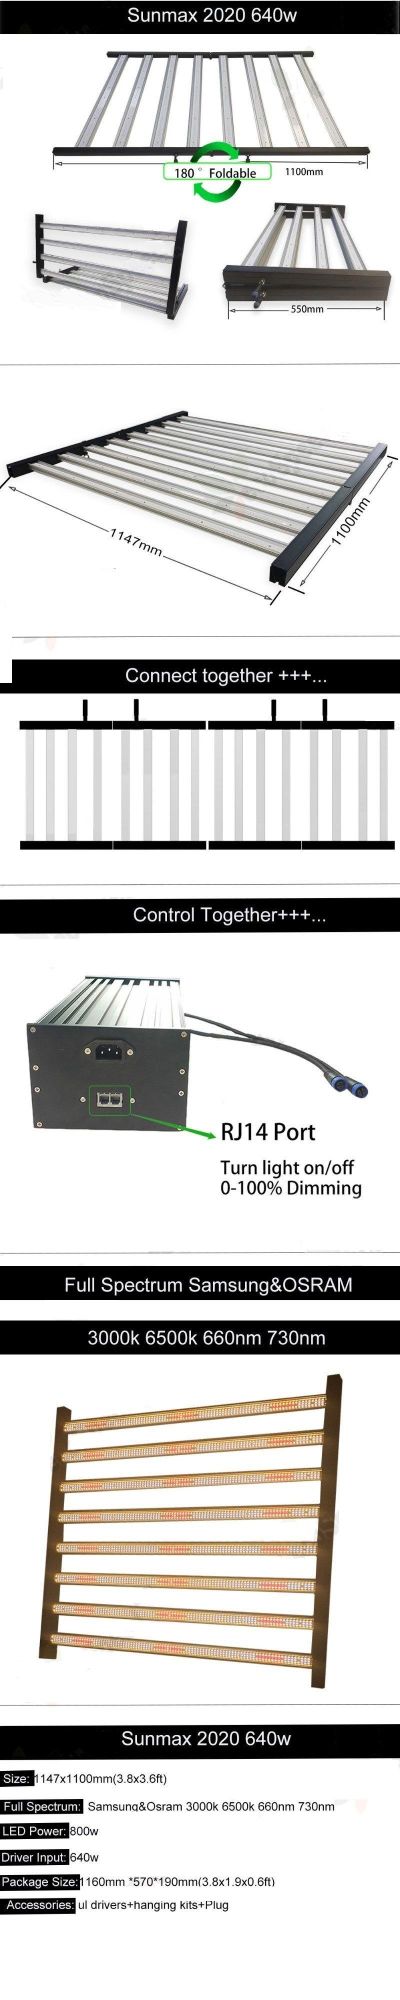 Full Spectrum High Power Adjustable LED Panel Tri-Proof High Bay Grow Light 200W/400W/600W/700W/800W/900W/1000W with Samsung 301b Osram 660nm 730nm